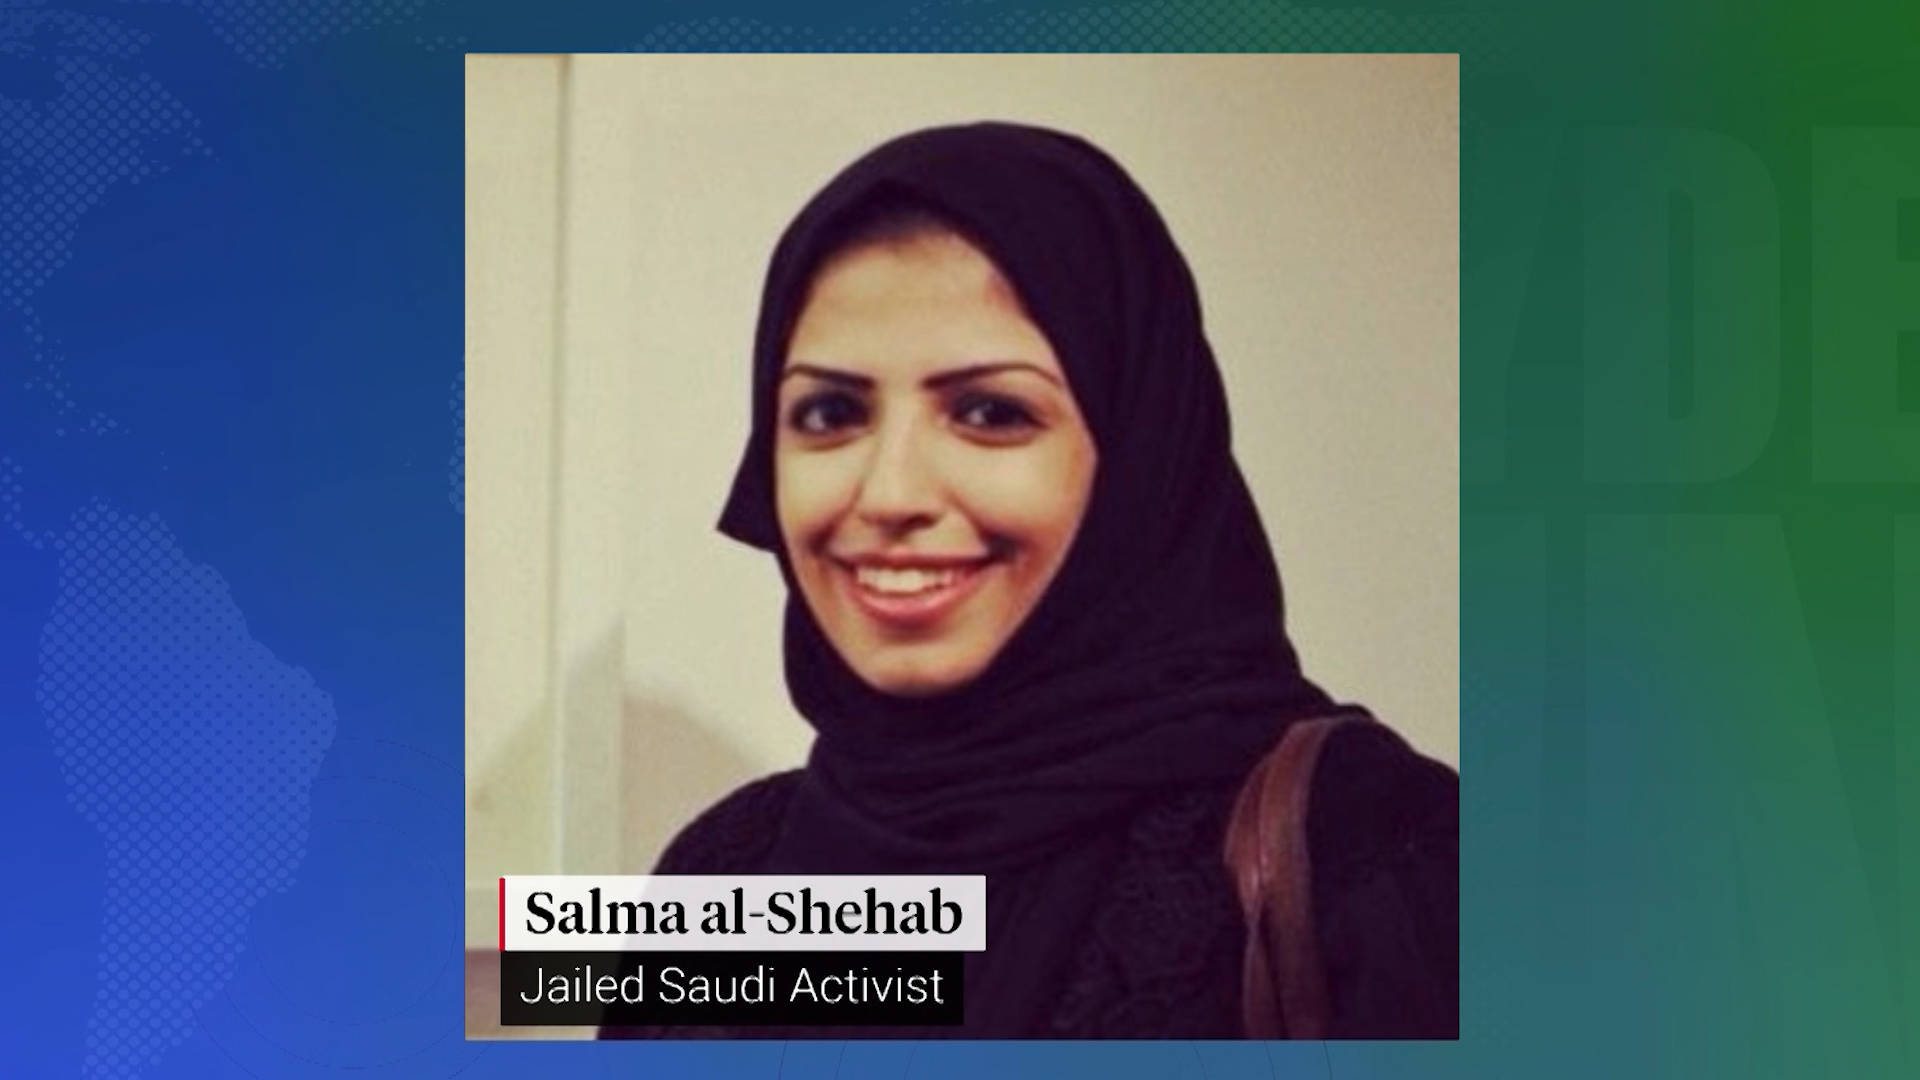 Arabia Saudita, condannata a 34 anni di carcere per aver rilanciato tweet di dissidenti